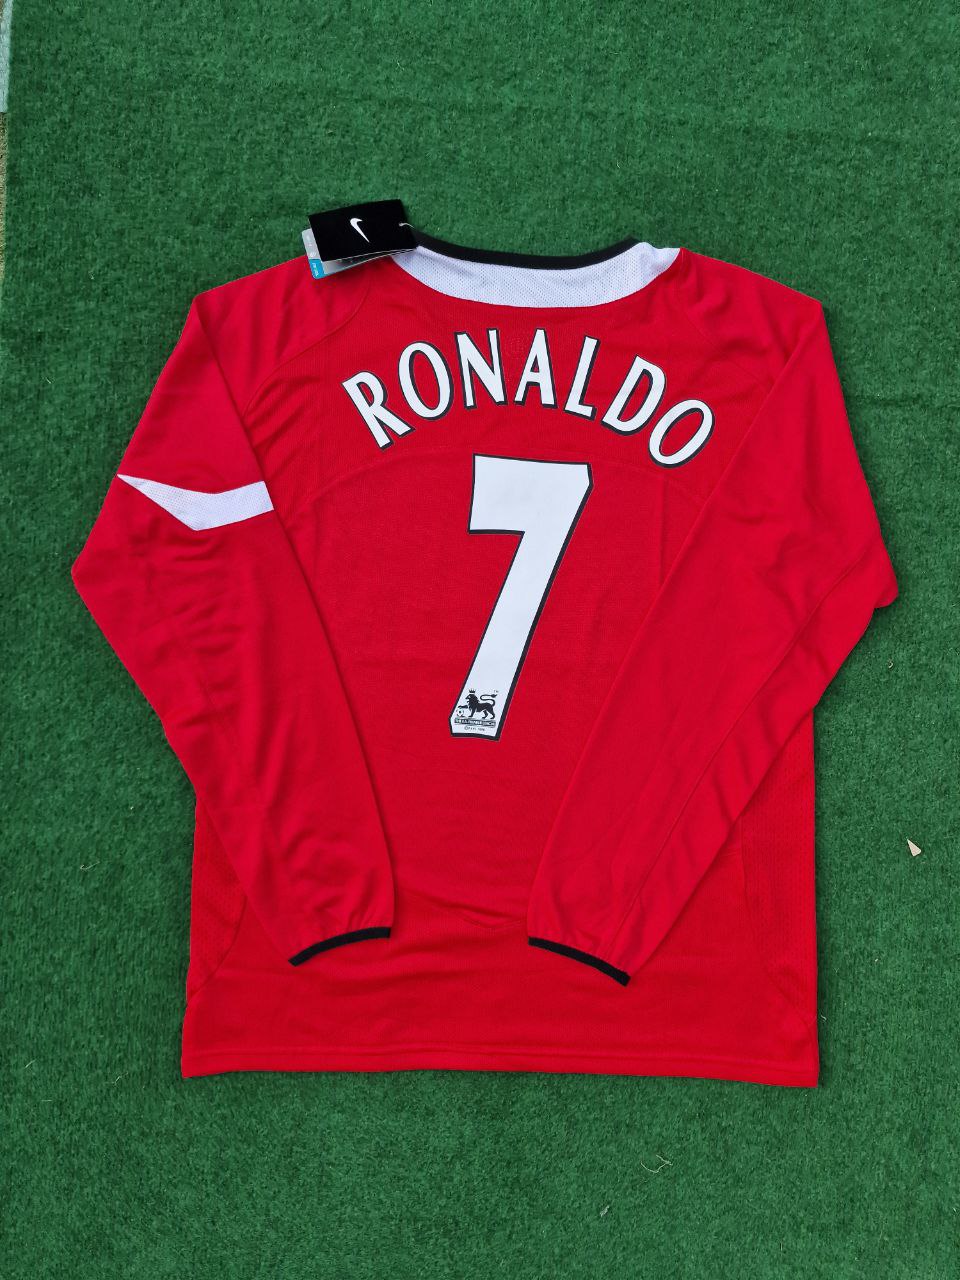 Cristiano Ronaldo Manchester United 2005 Retro Football Jersey